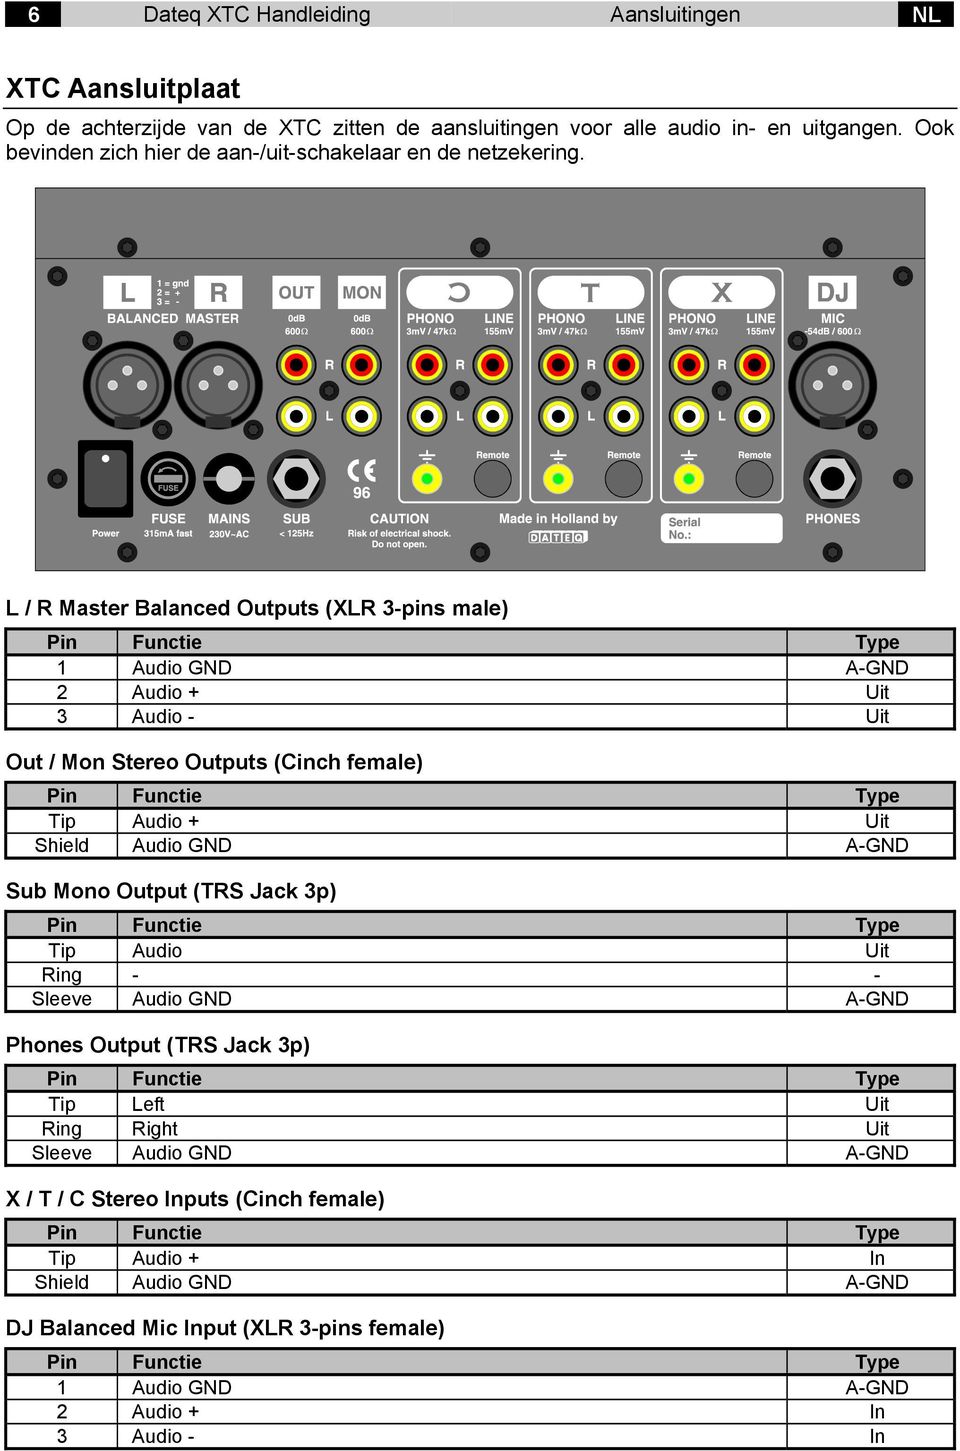 L / R Master Balanced Outputs (XLR 3-pins male) 1 Audio GND A-GND 2 Audio + Uit 3 Audio - Uit Out / Mon Stereo Outputs (Cinch female) Tip Audio + Uit Shield Audio GND A-GND